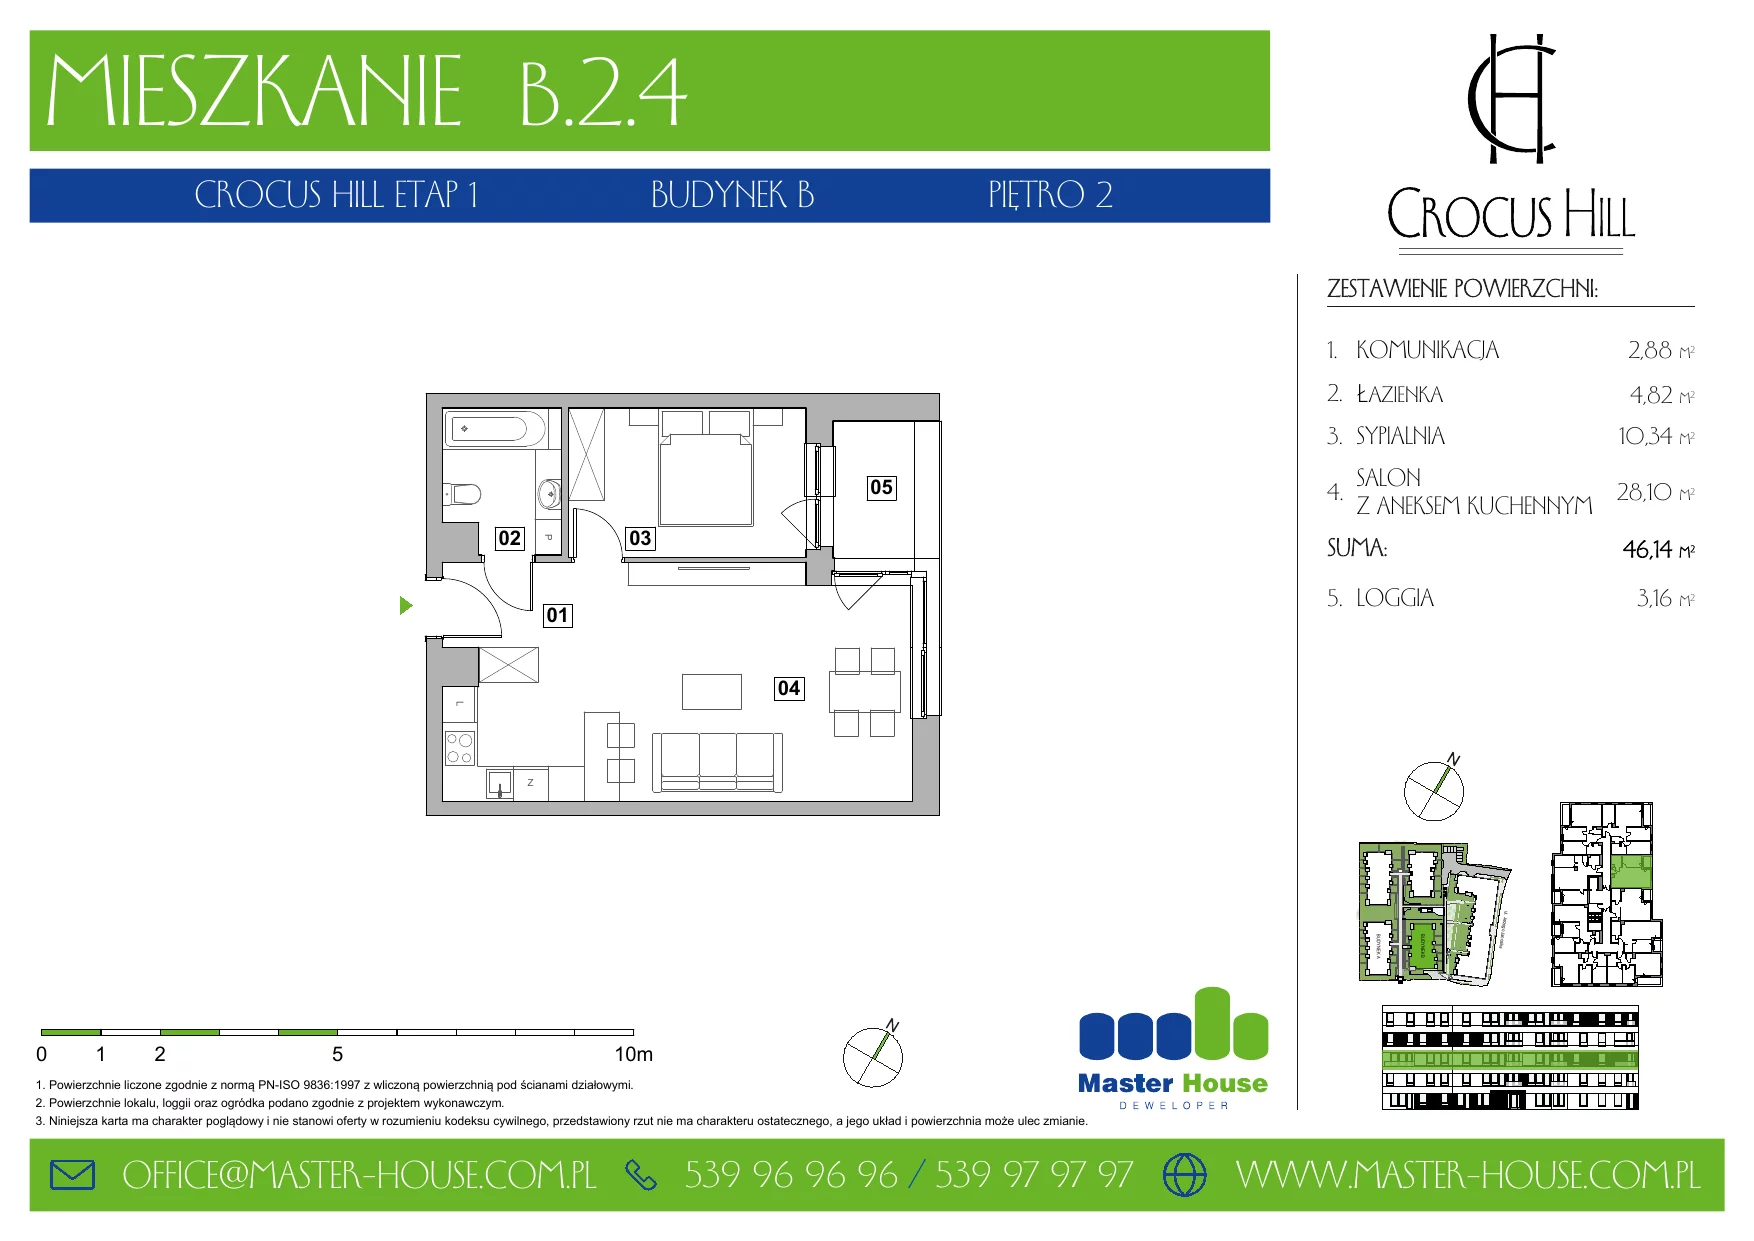 Mieszkanie 46,14 m², piętro 2, oferta nr B.2.4, Crocus Hill, Szczecin, Śródmieście, ul. Jerzego Janosika 2, 2A, 3, 3A